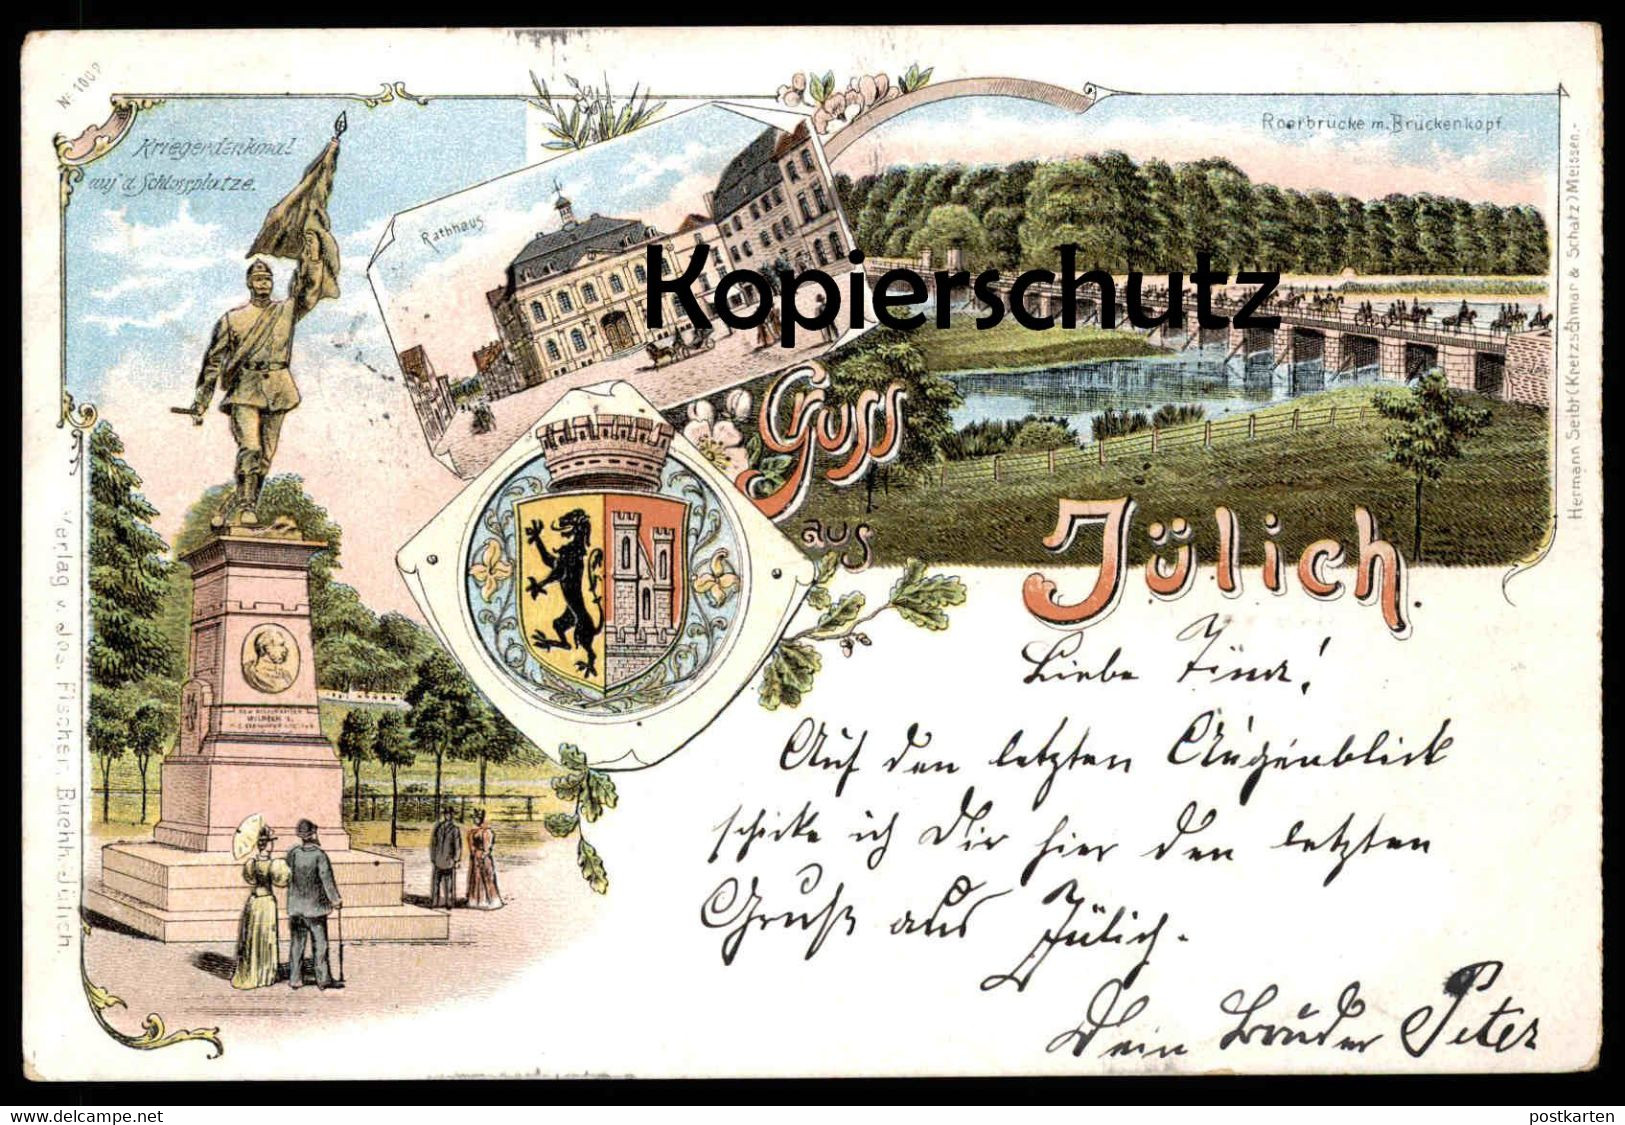 ALTE LITHO POSTKARTE GRUSS AUS JÜLICH 1897 KRIEGERDENKMAL ROERBRÜCKE BRÜCKENKOPF WAPPEN Ansichtskarte AK Cpa Postcard - Jülich